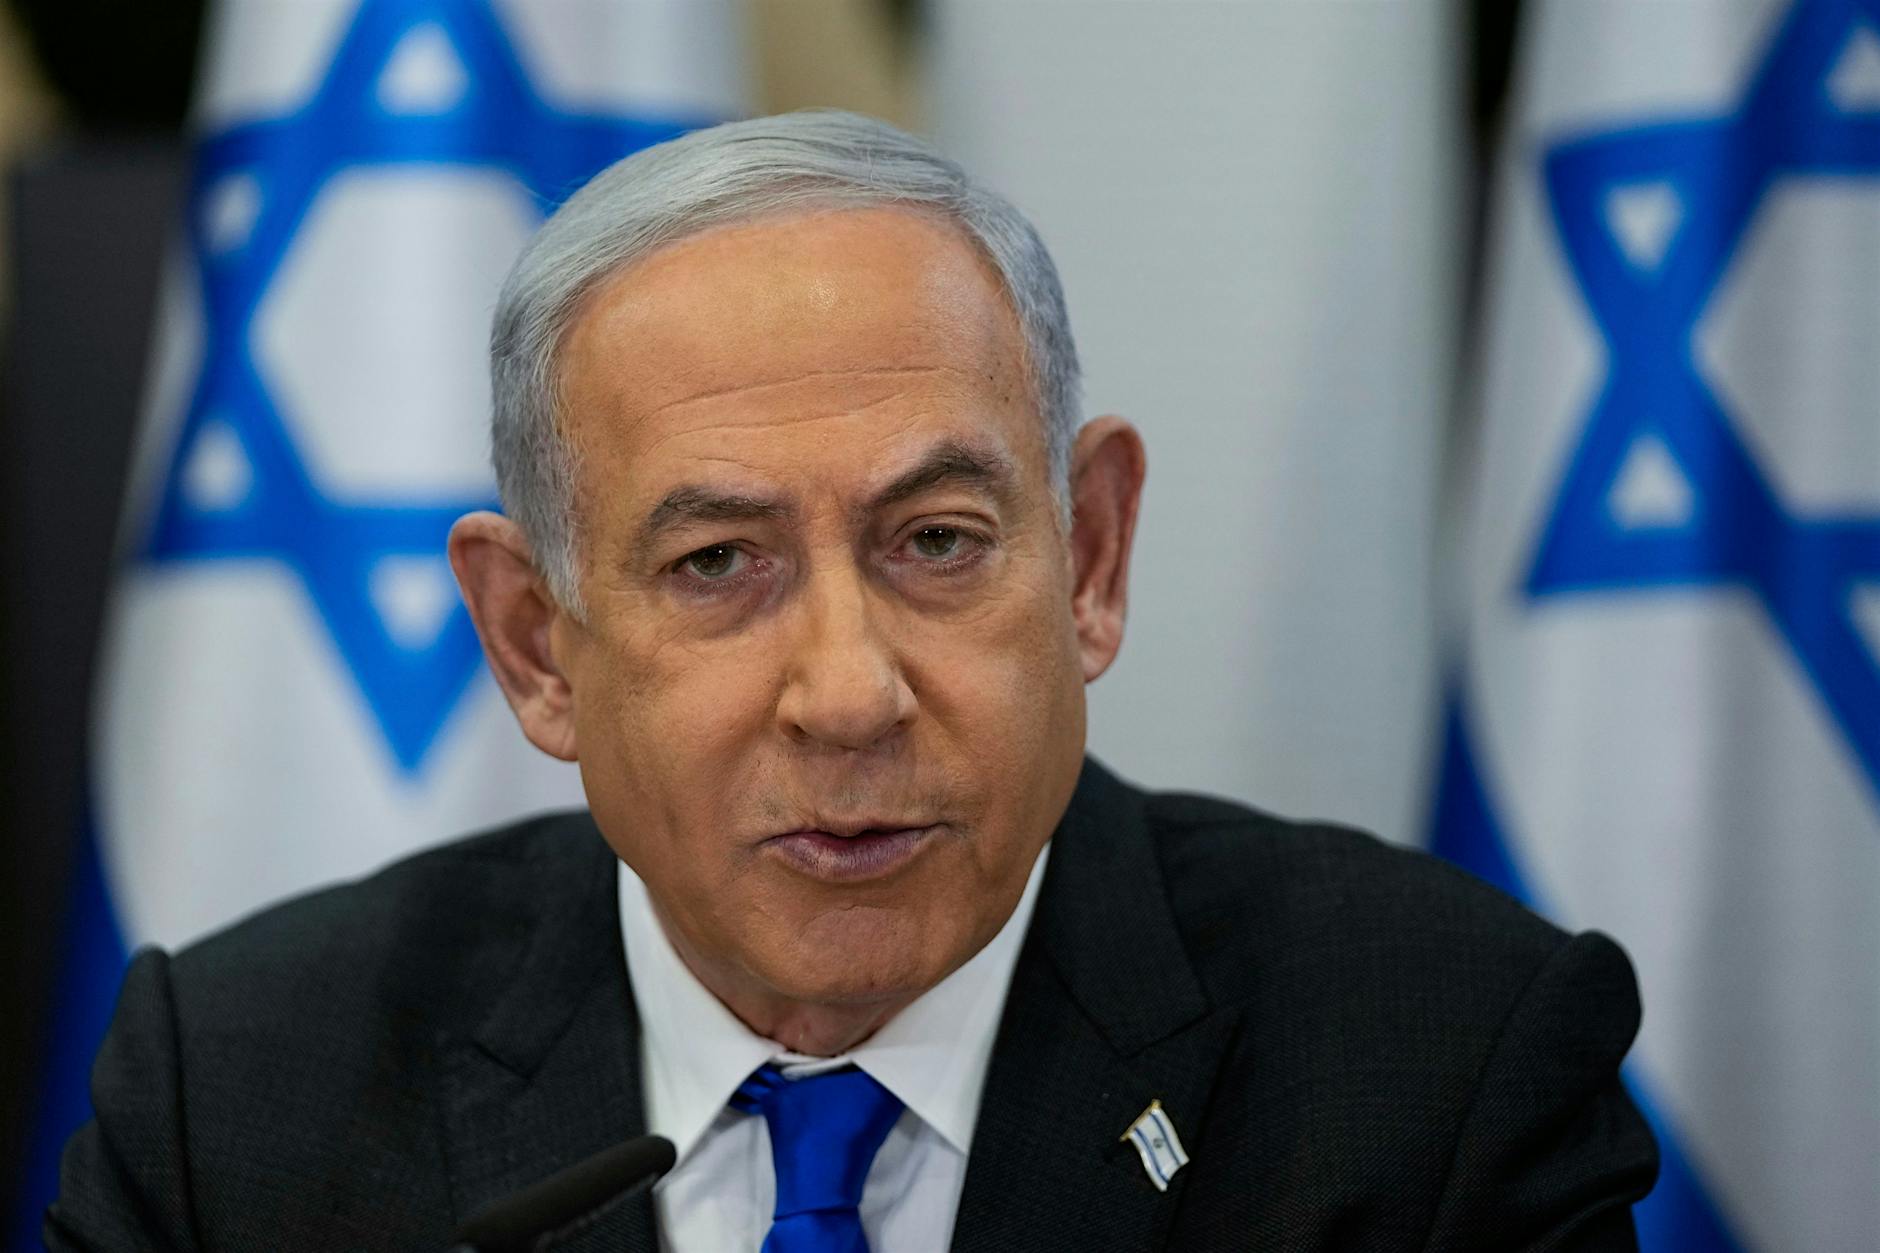 Bei Haftbefehl vom Internationalen Strafgerichtshof gegen Netanjahu – würde Deutschland Israels Premier verhaften?